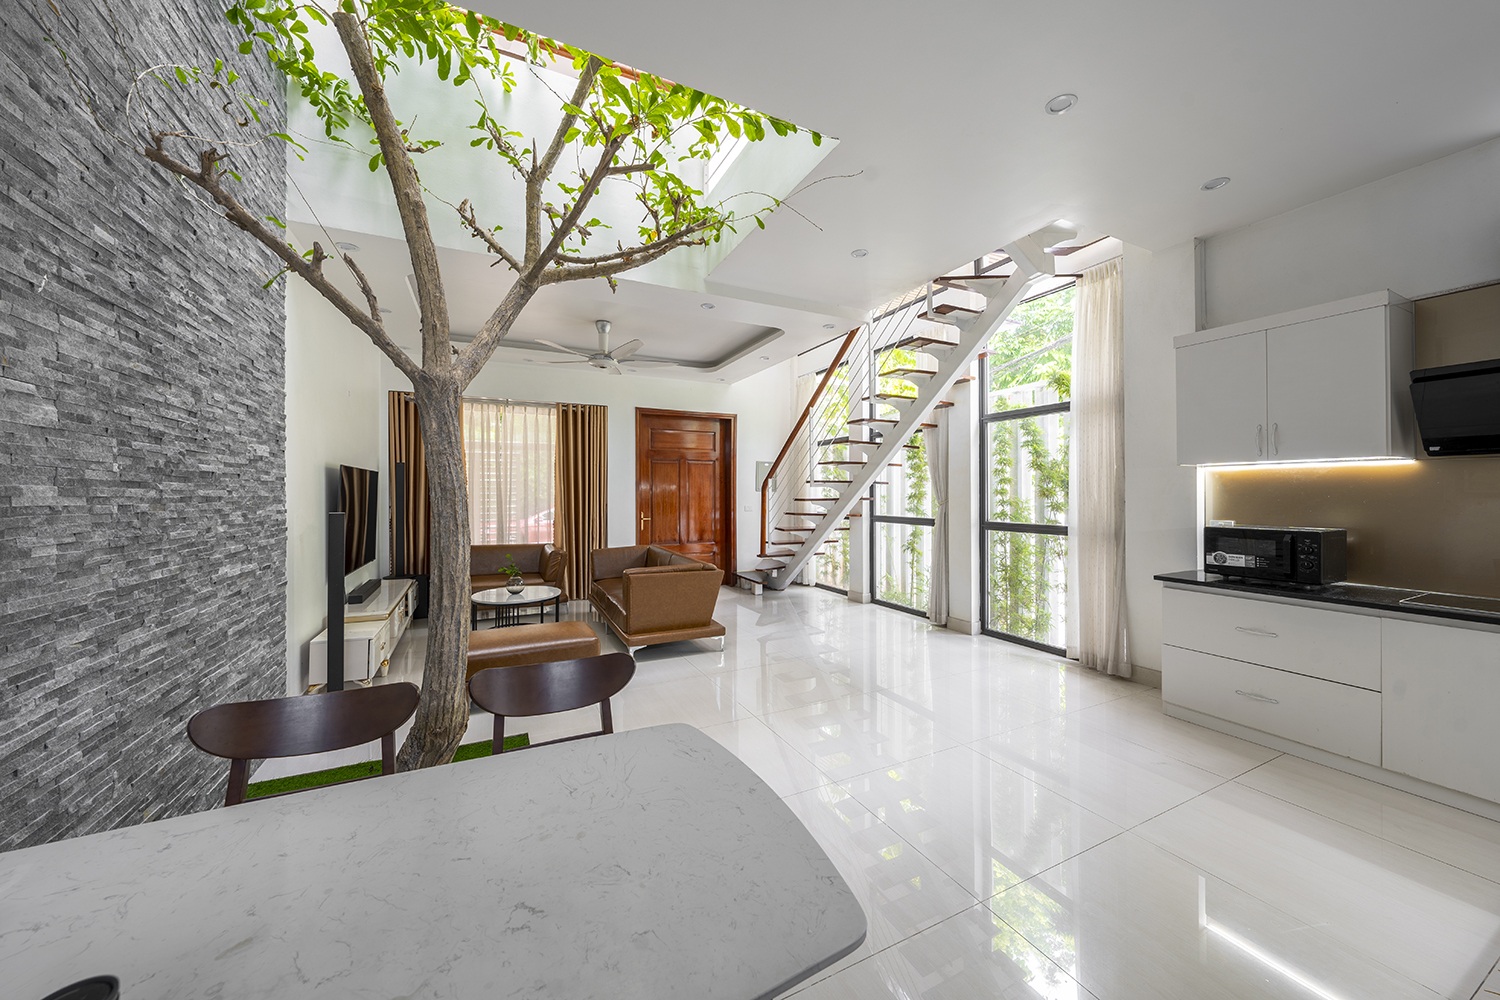 View - Nhà tại Phú Thọ trên lô đất 90m2 nhưng xây lên trông vẫn rộng rãi, xanh mát | Báo Dân trí